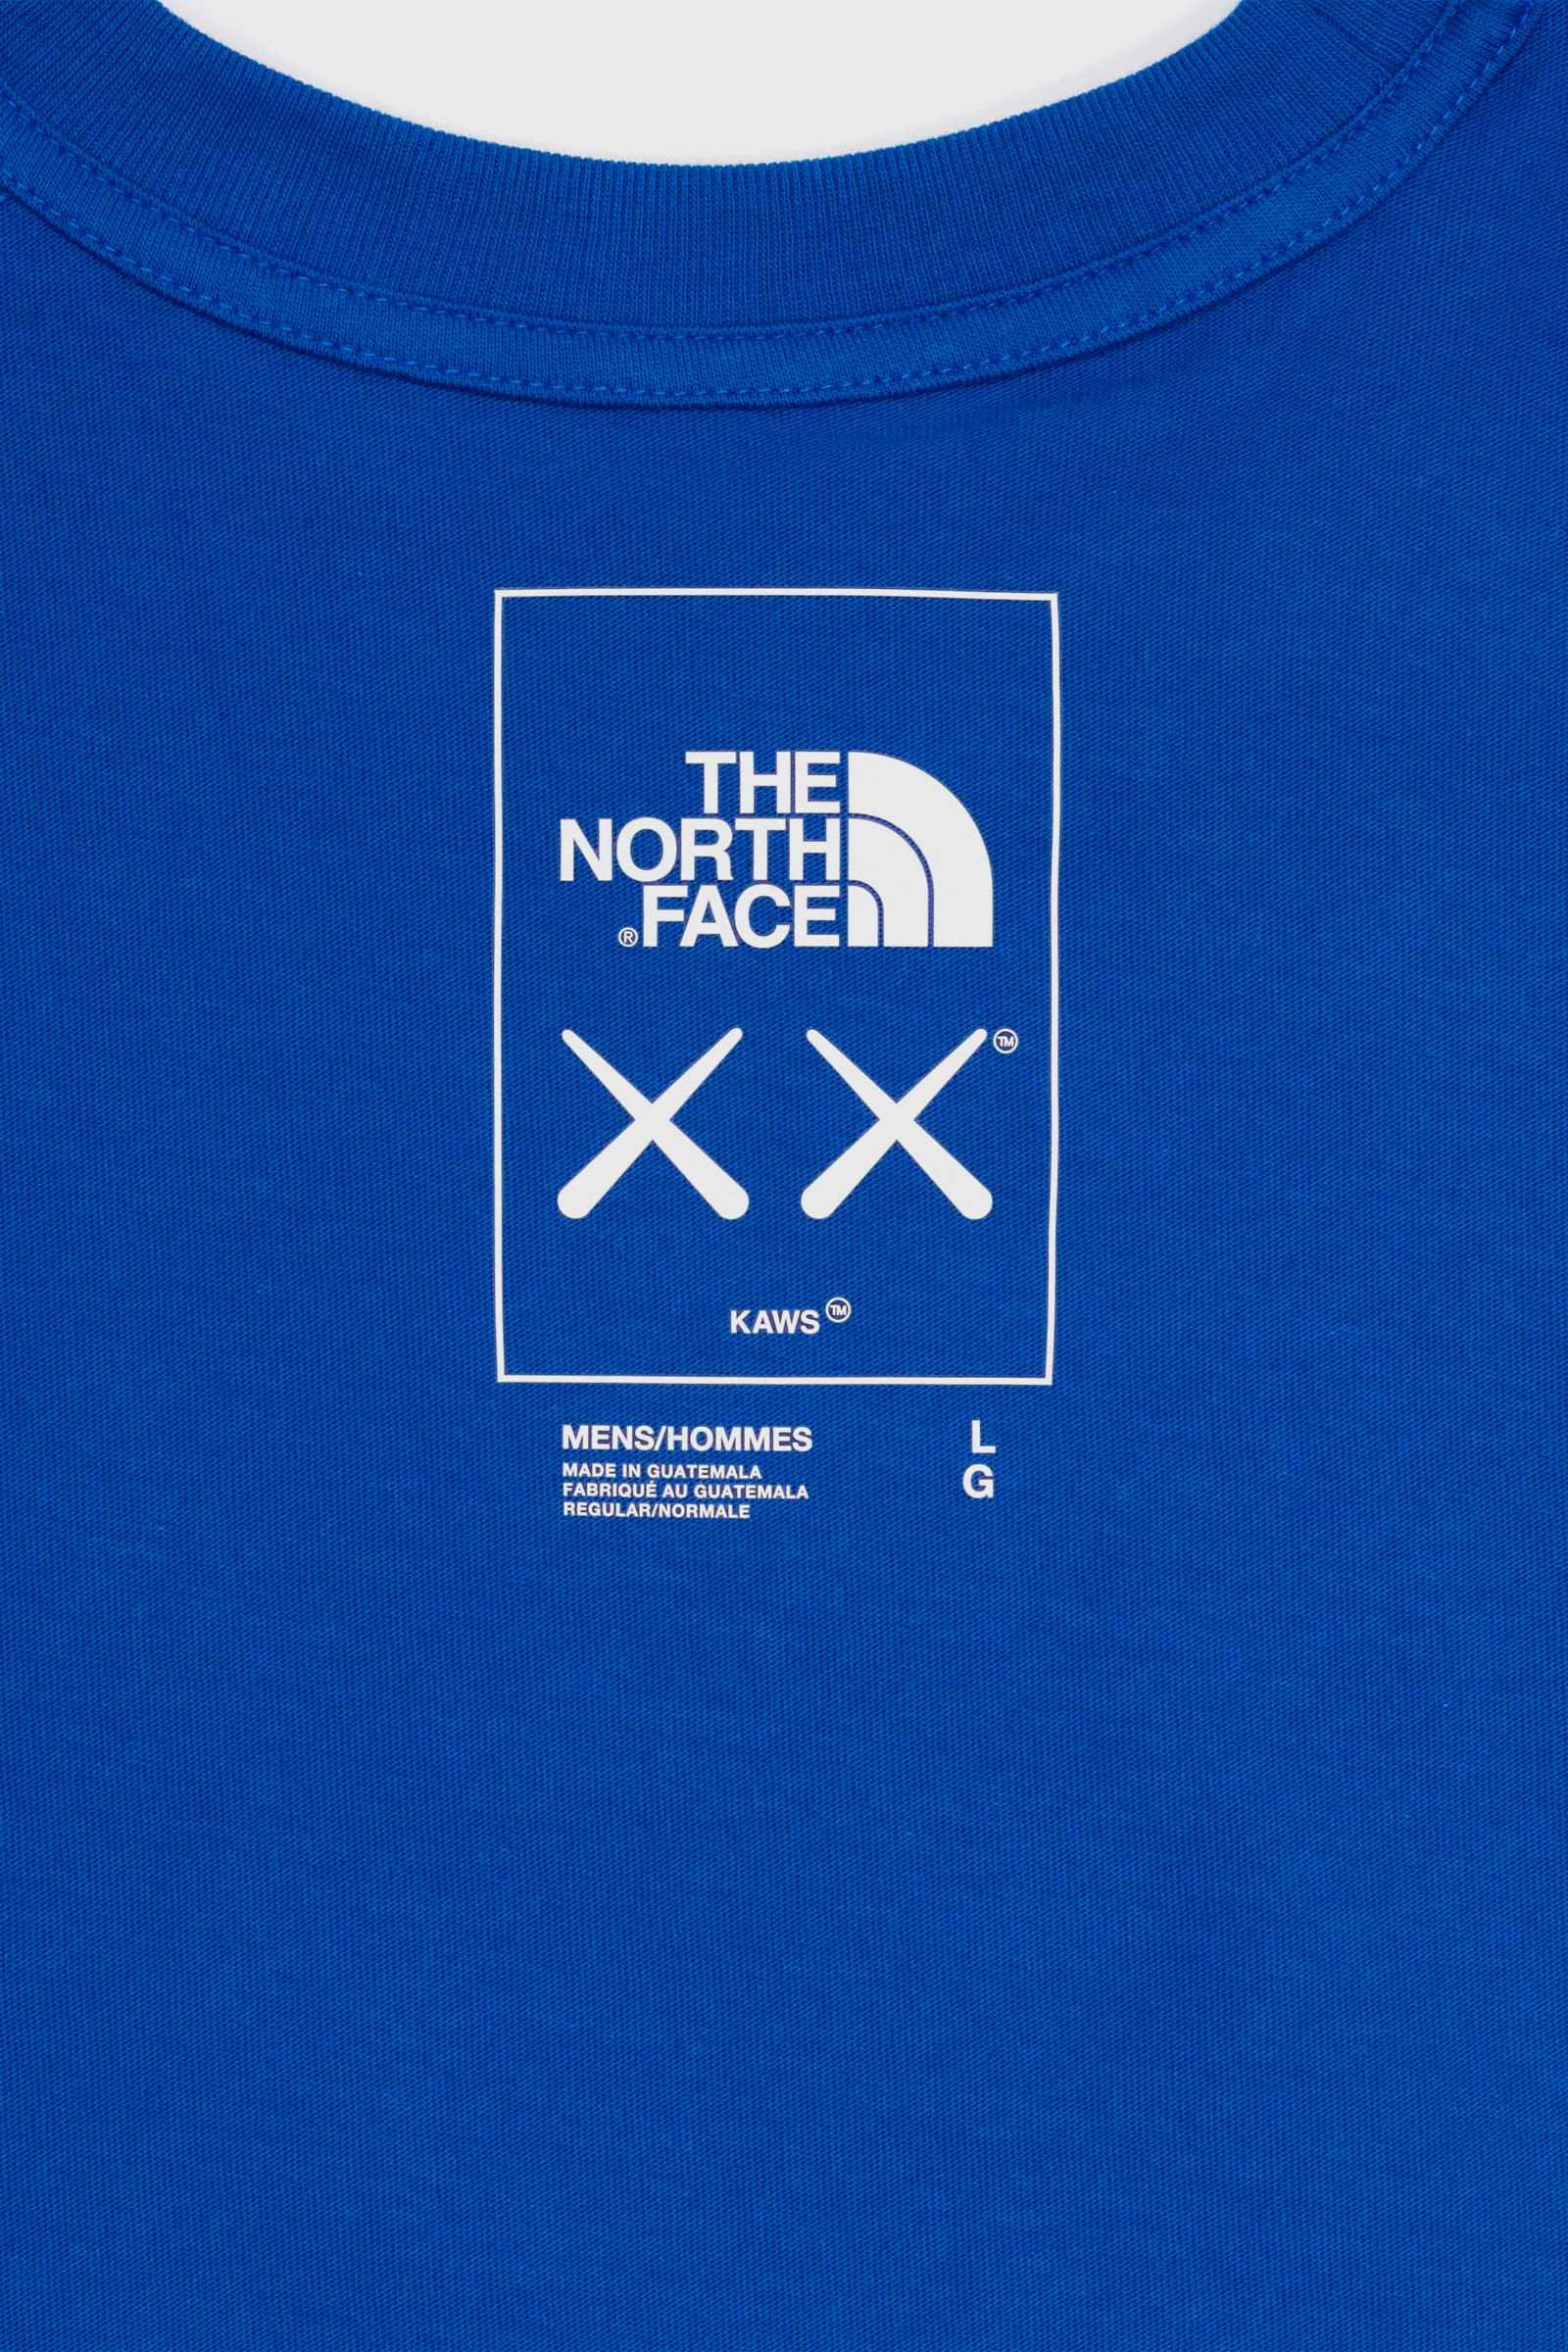 The North Face NF X KAWS Short Sleeve Tee Bolt Blue | WoodWood.com